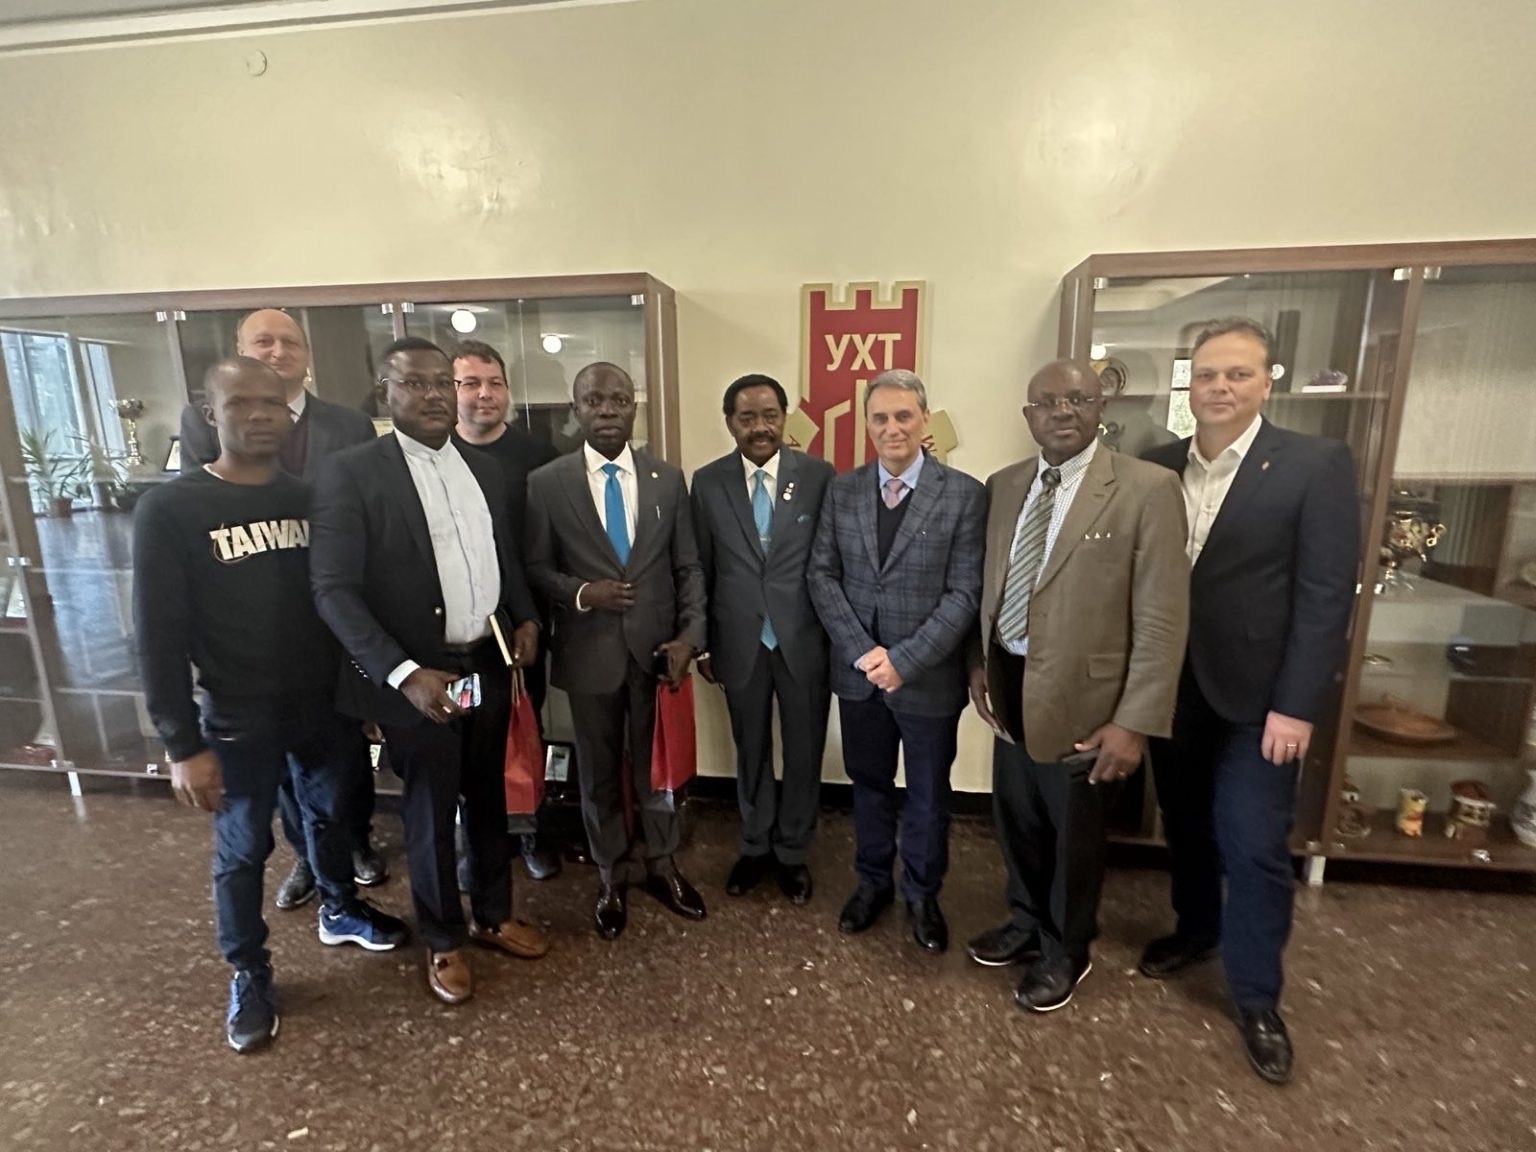 Студенти от Нигерия проявяват интерес да се обучават в УХТ Пловдив